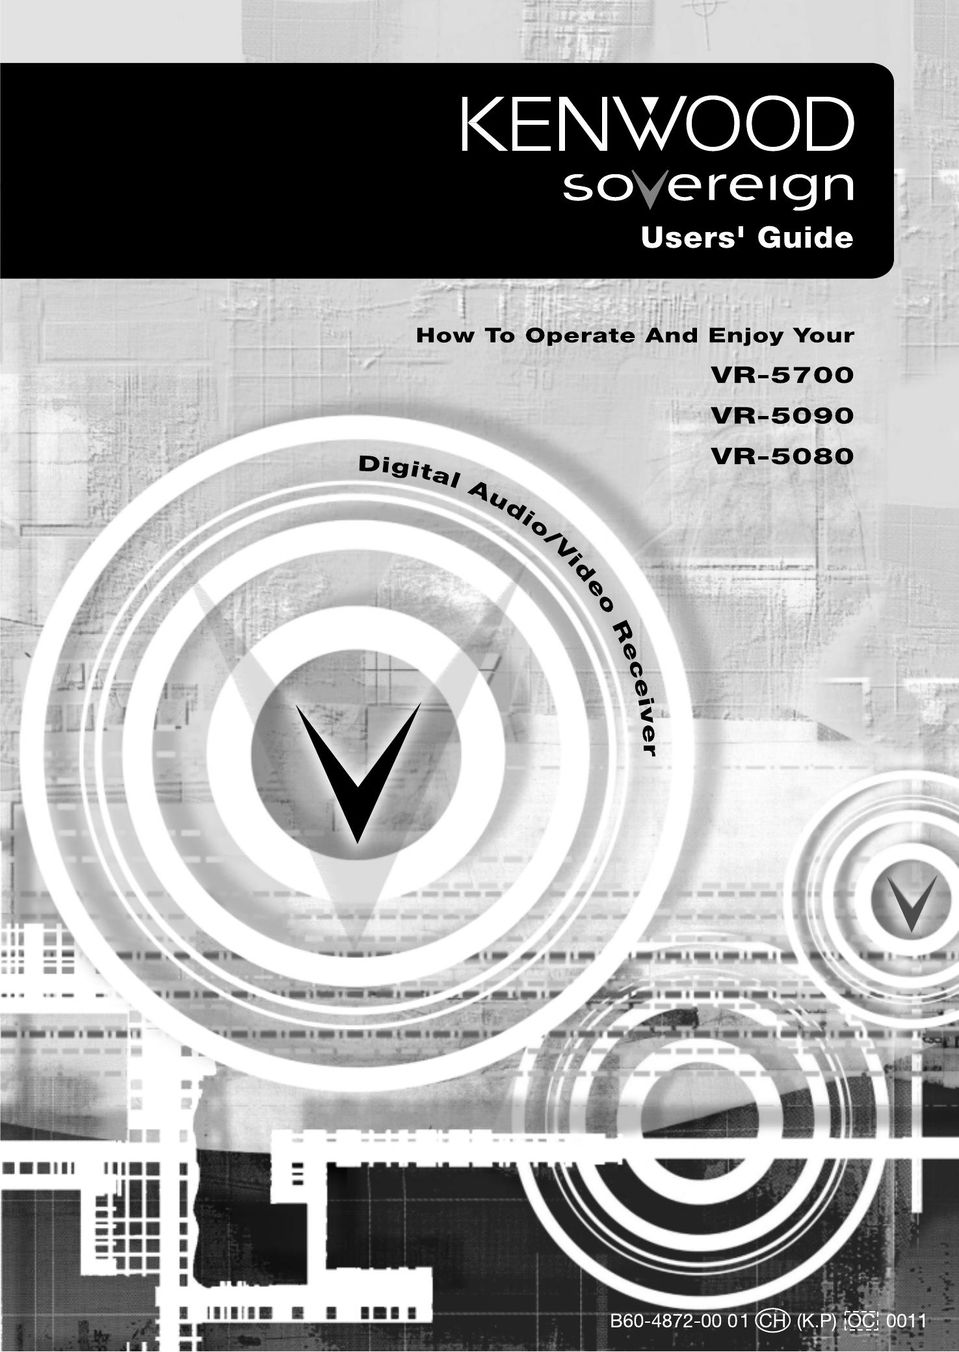 Kenwood VR-5090 DVR User Manual